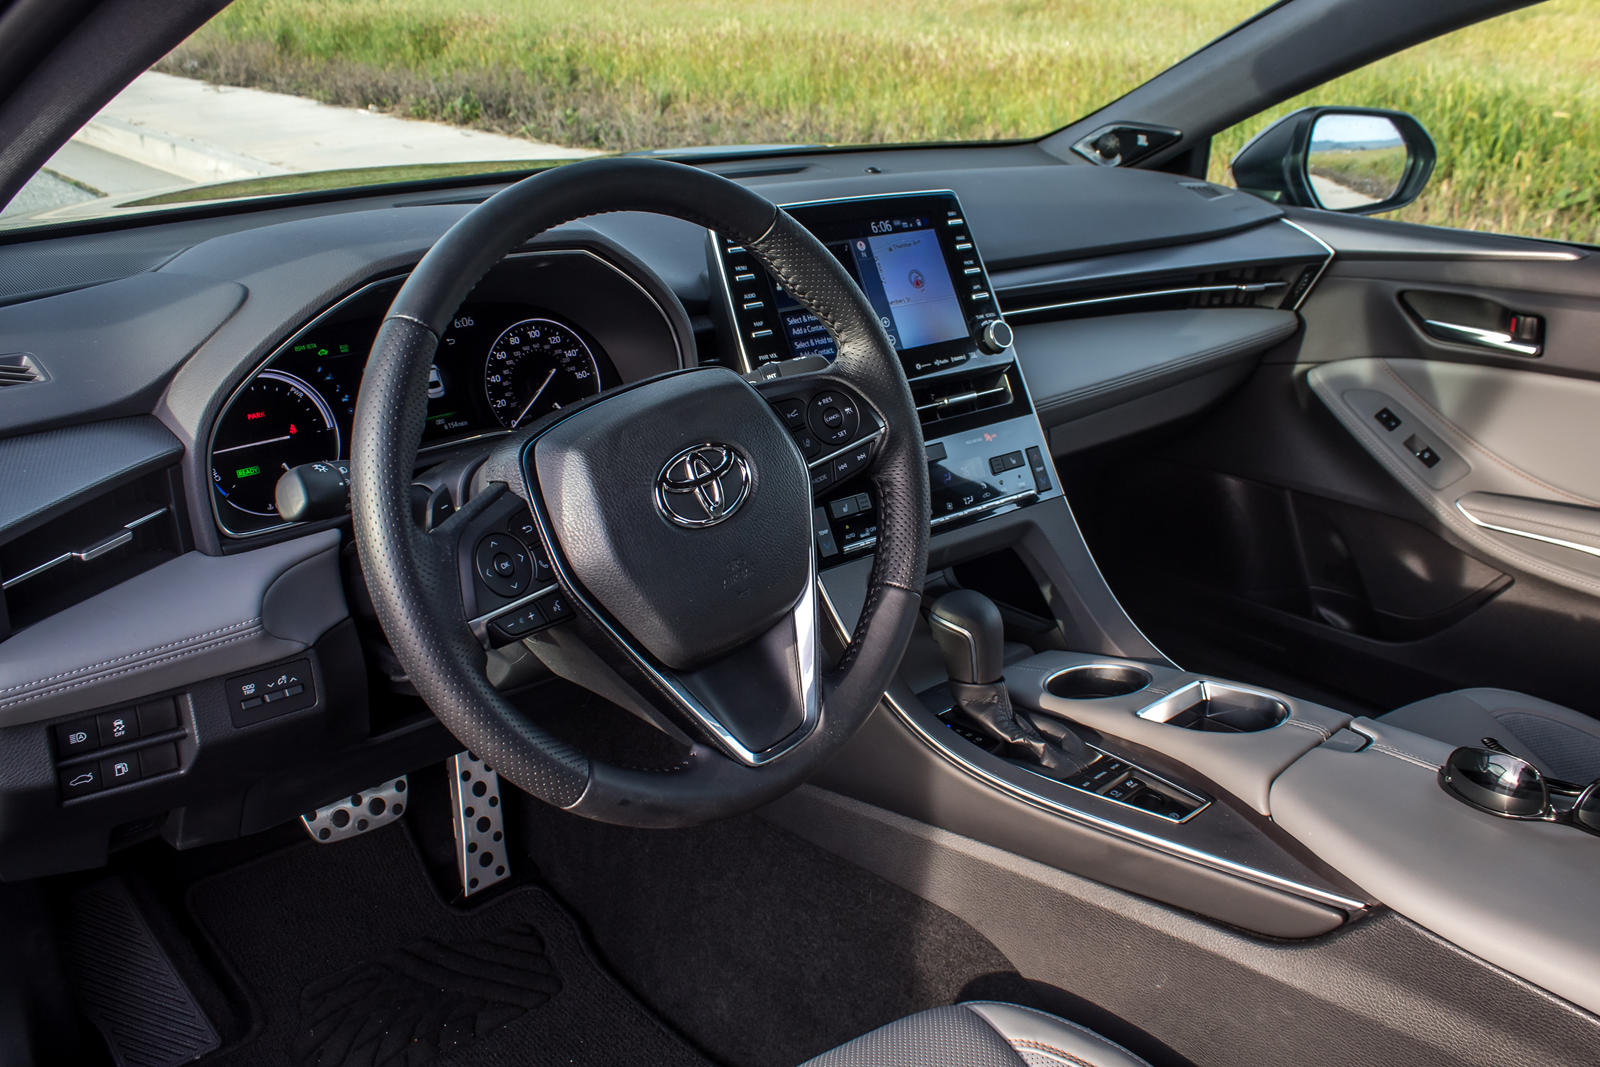 2019 Toyota Avalon Hybrid Steering Wheel Details